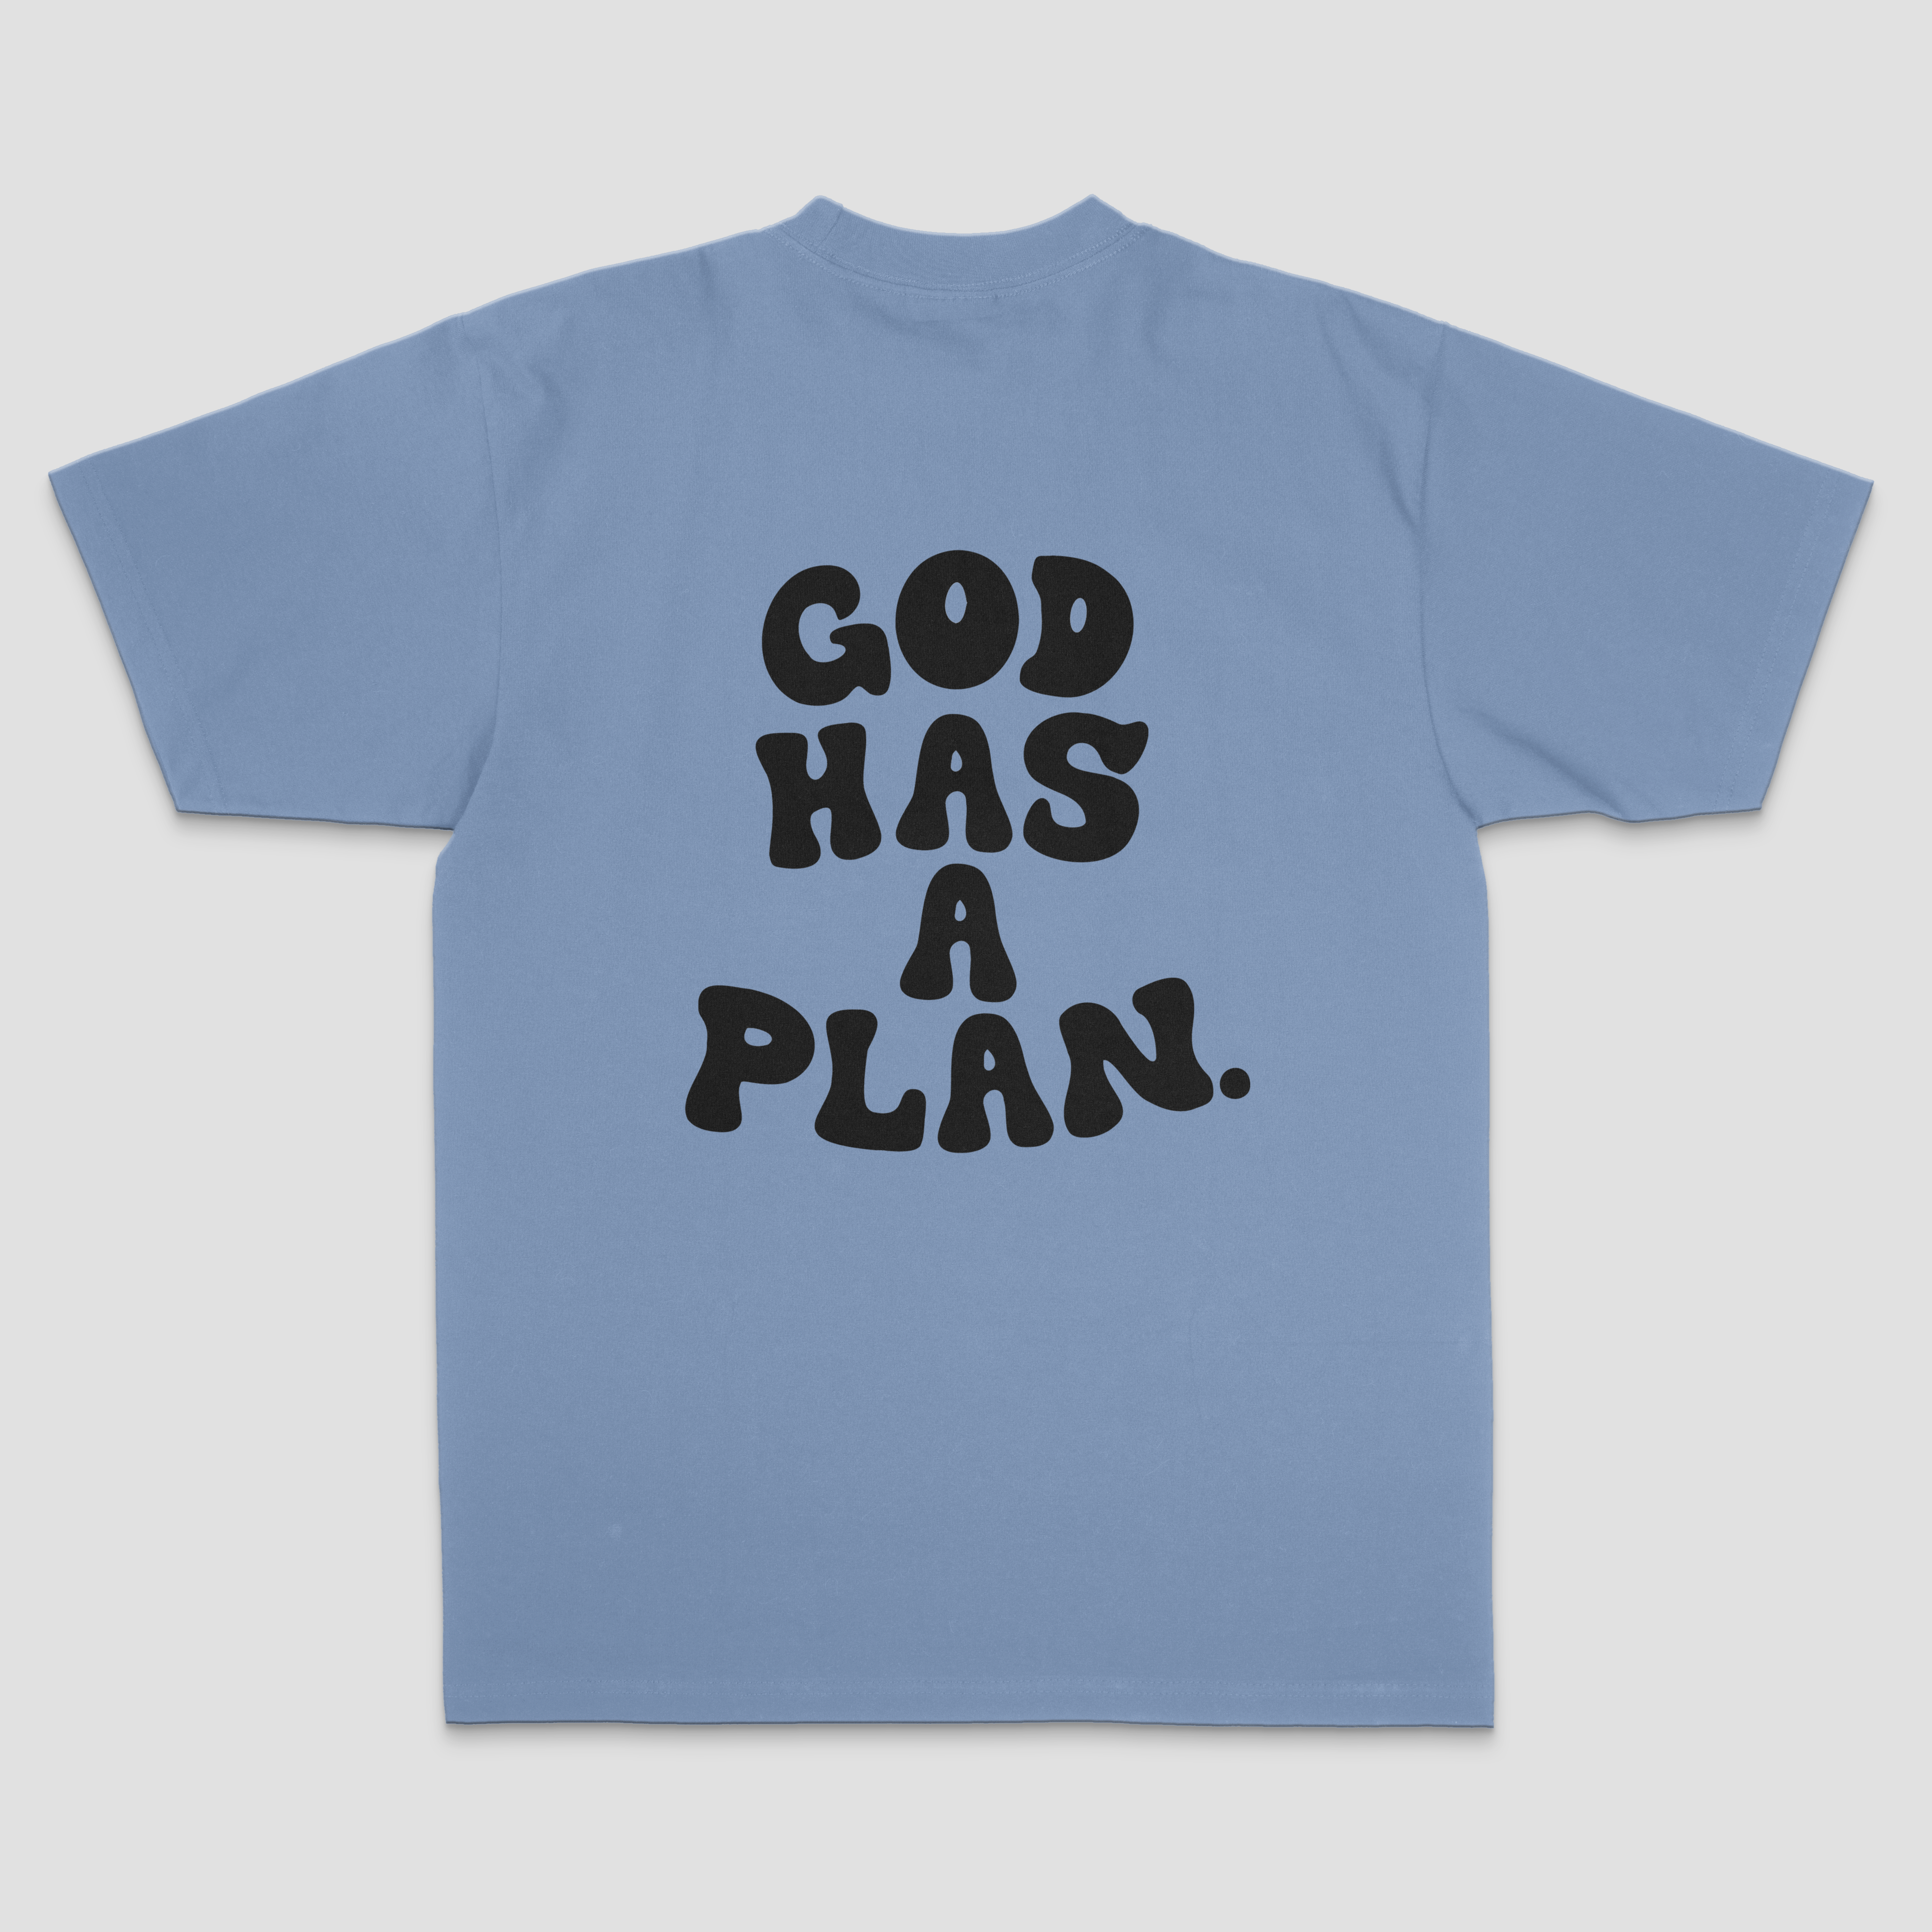 GOD HAS A PLAN TEE